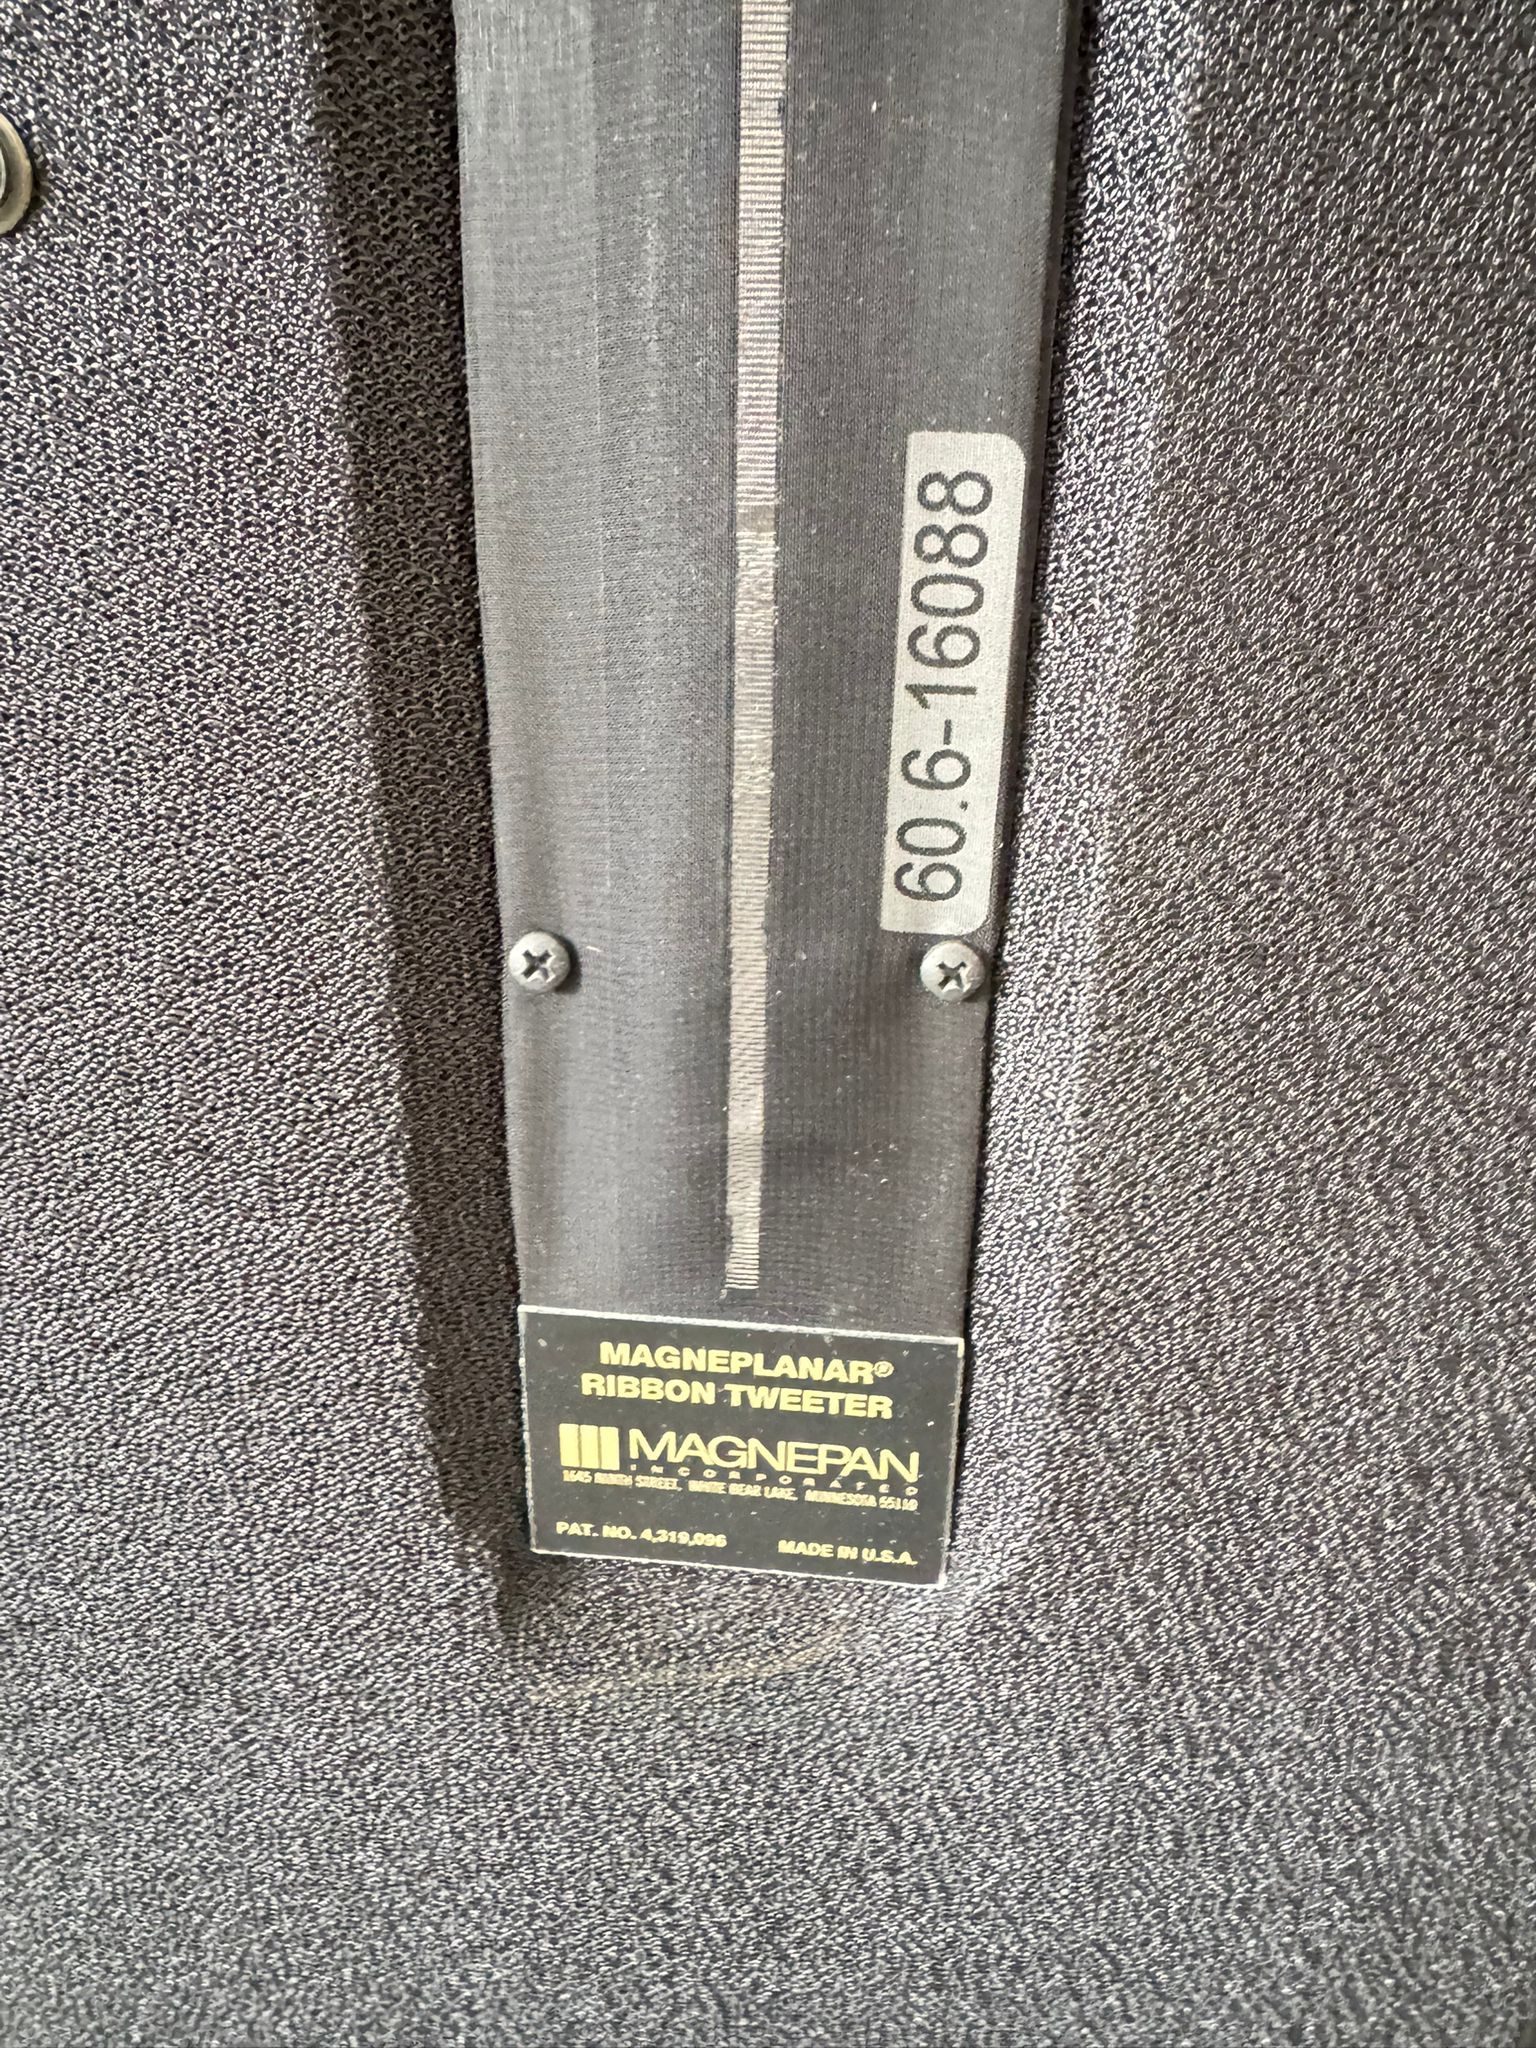 Magnepan 20.7 speakers in black-grey 15